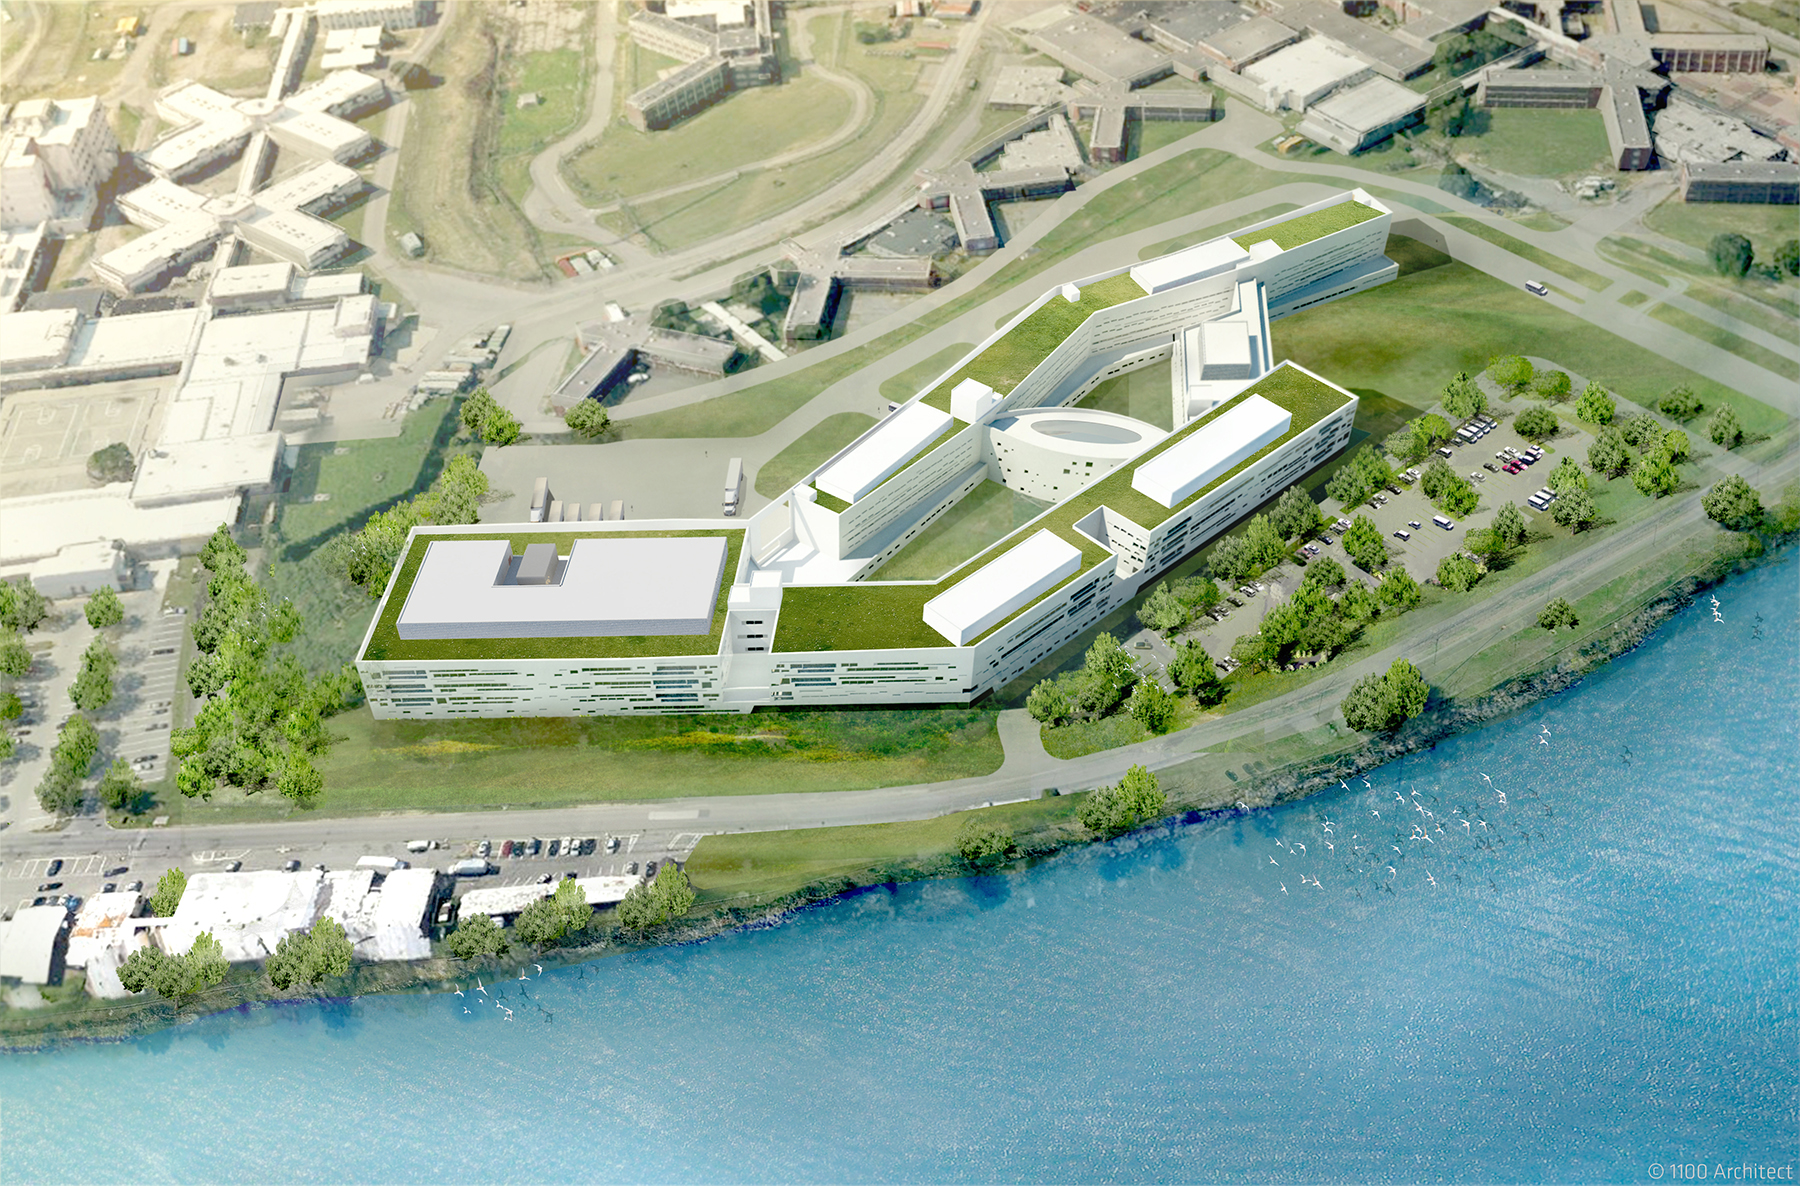  Intake and Mental Health Facility, Riker’s Island, NY, 1100 Architect 